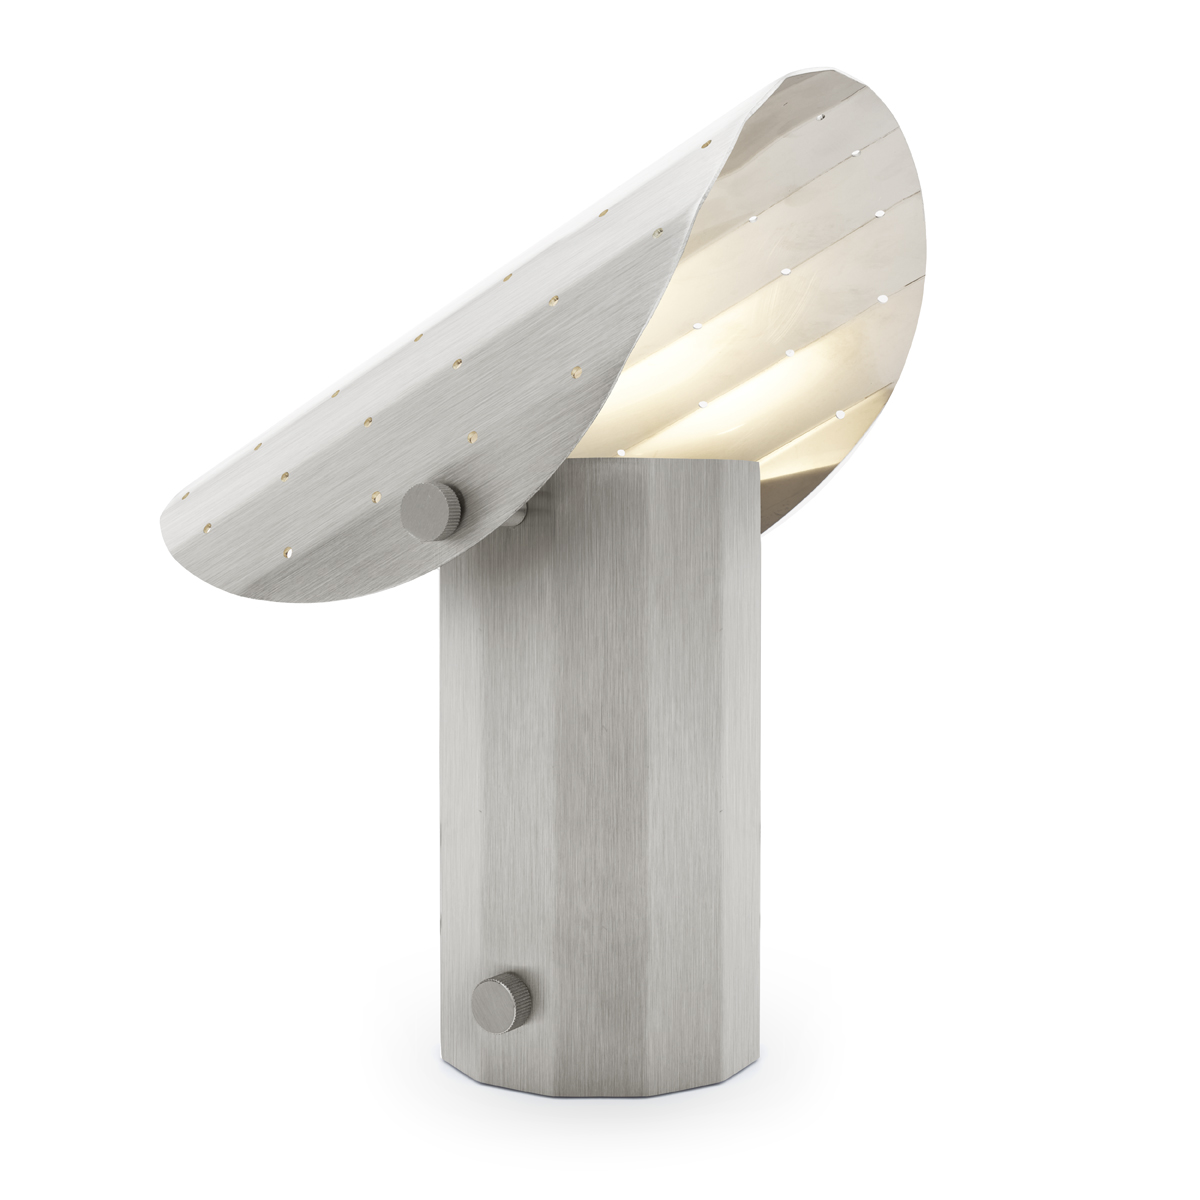 Lampa stołowa APOLIN z perforowanym daszkiem, 30 cm, szczotkowana stal